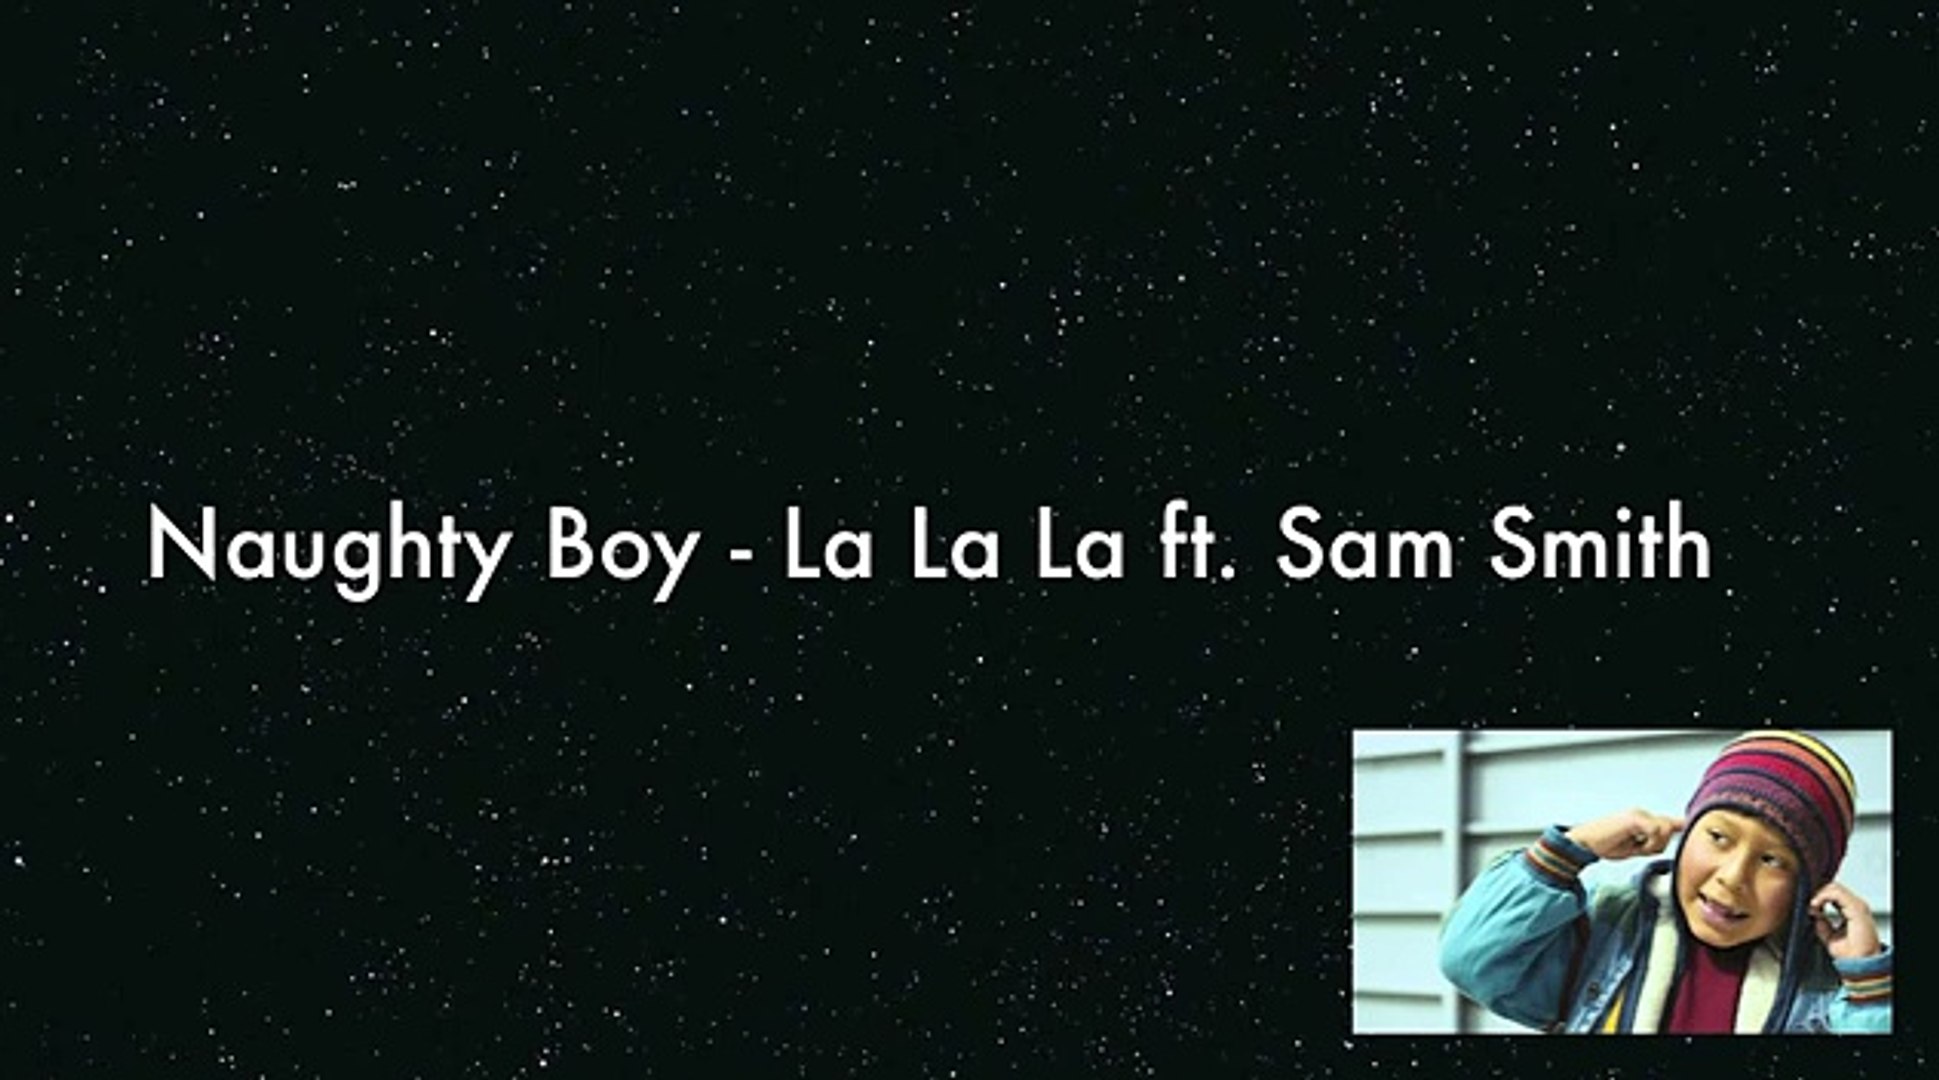 Shy smith soaked lyrics. Naughty boy Sam Smith. Сэм Смит ла ла ла. Naughty boy Sam Smith la la la. La la la Сэм Смит.